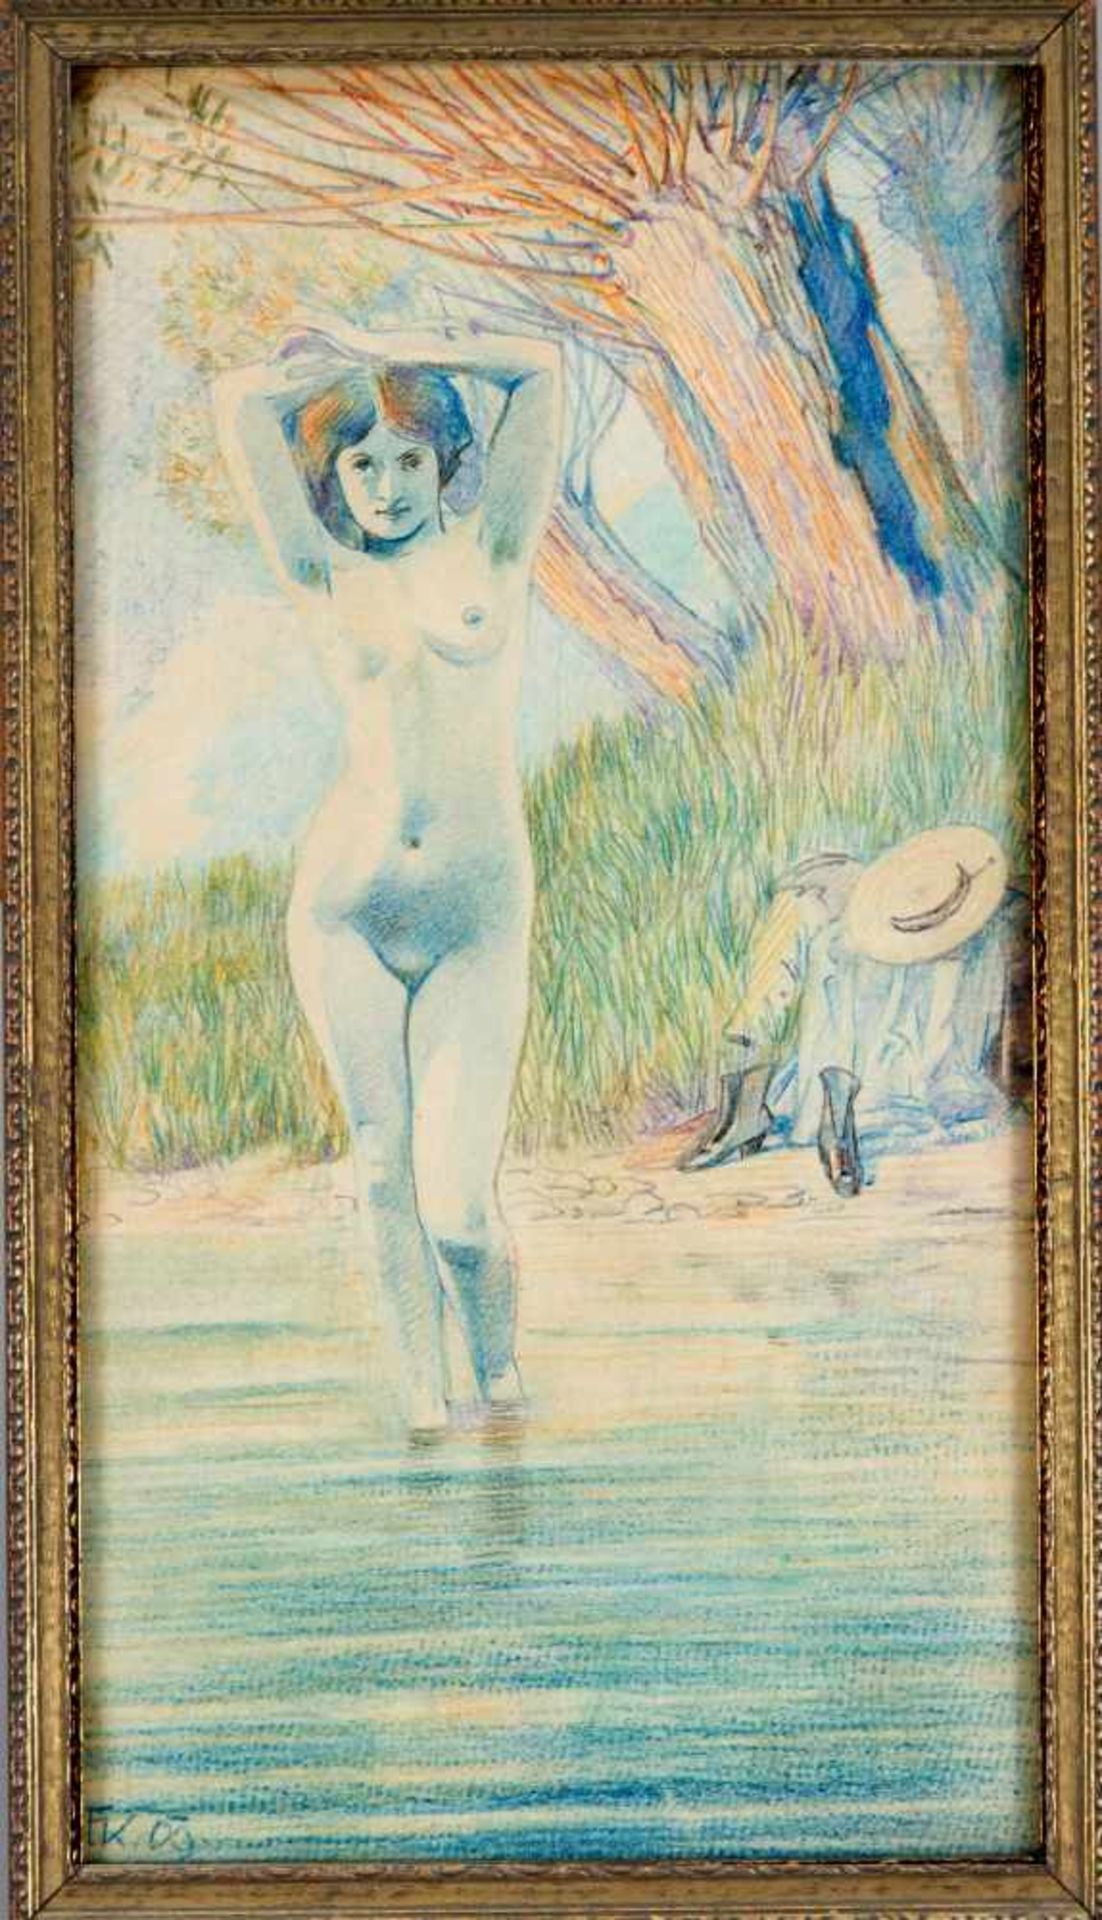 Erotik - Monogrammist "FK", um 1910, nackte junge Frau, die ihre Kleider am Ufer abgelegt